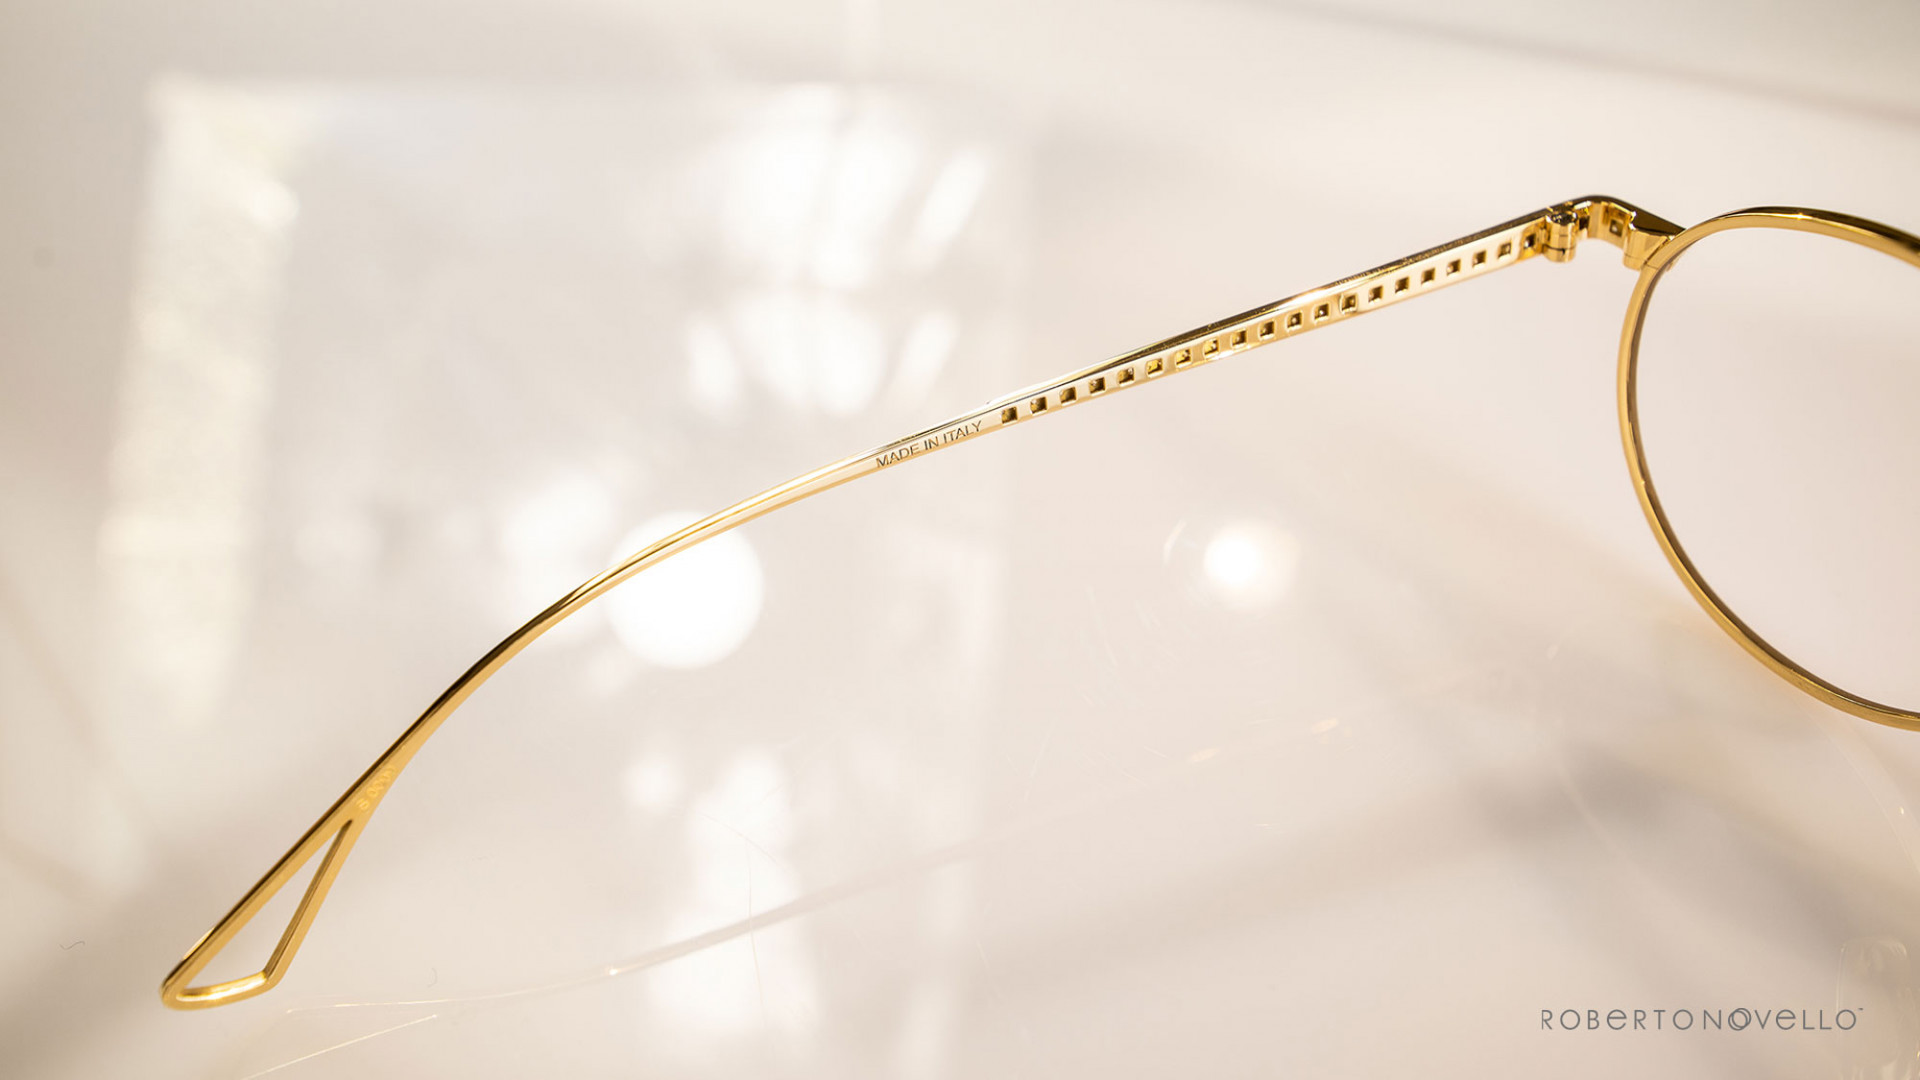 details of golden glasses frame